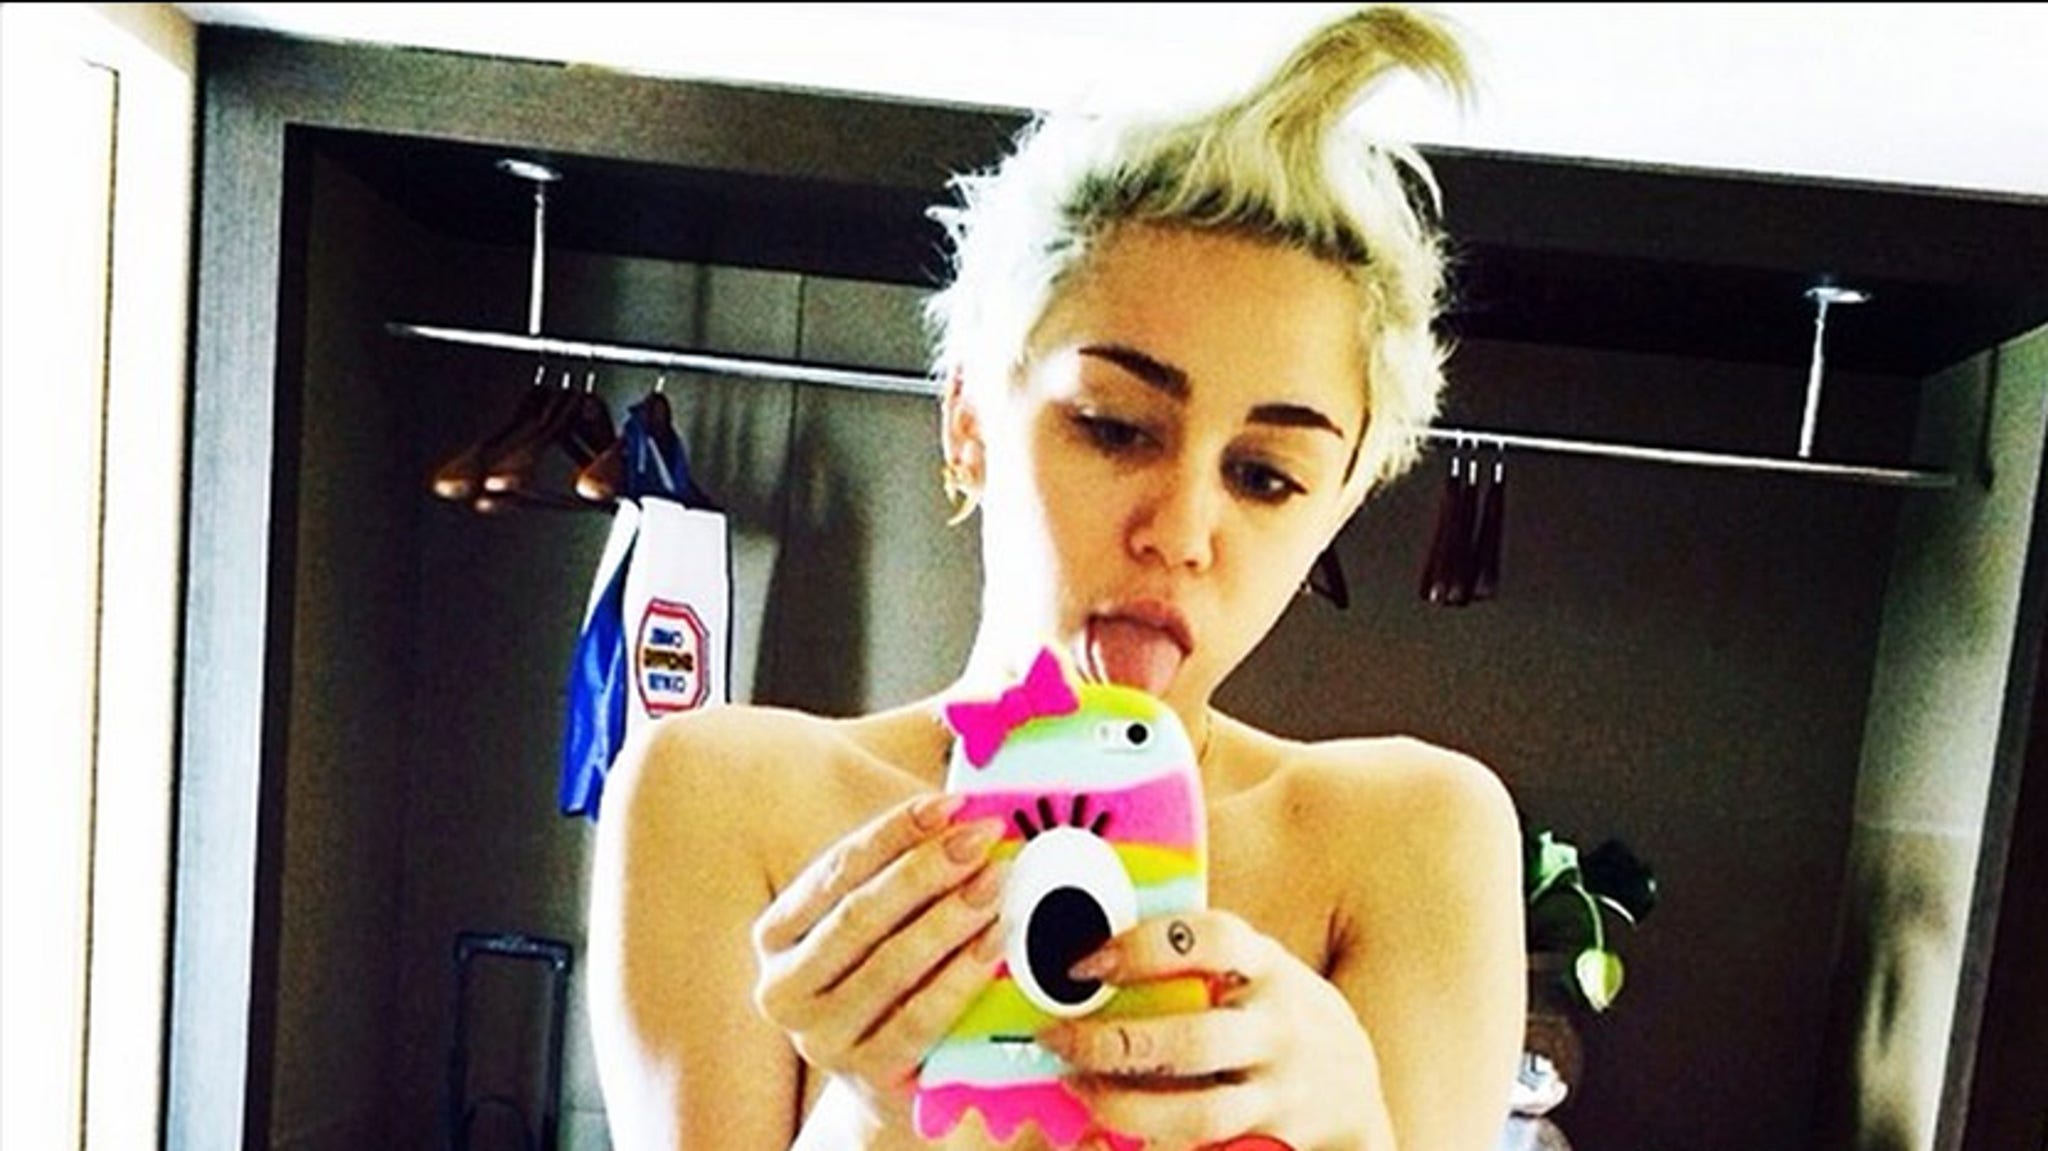 Miley Cirus In Bikini Pron Pictures 2023